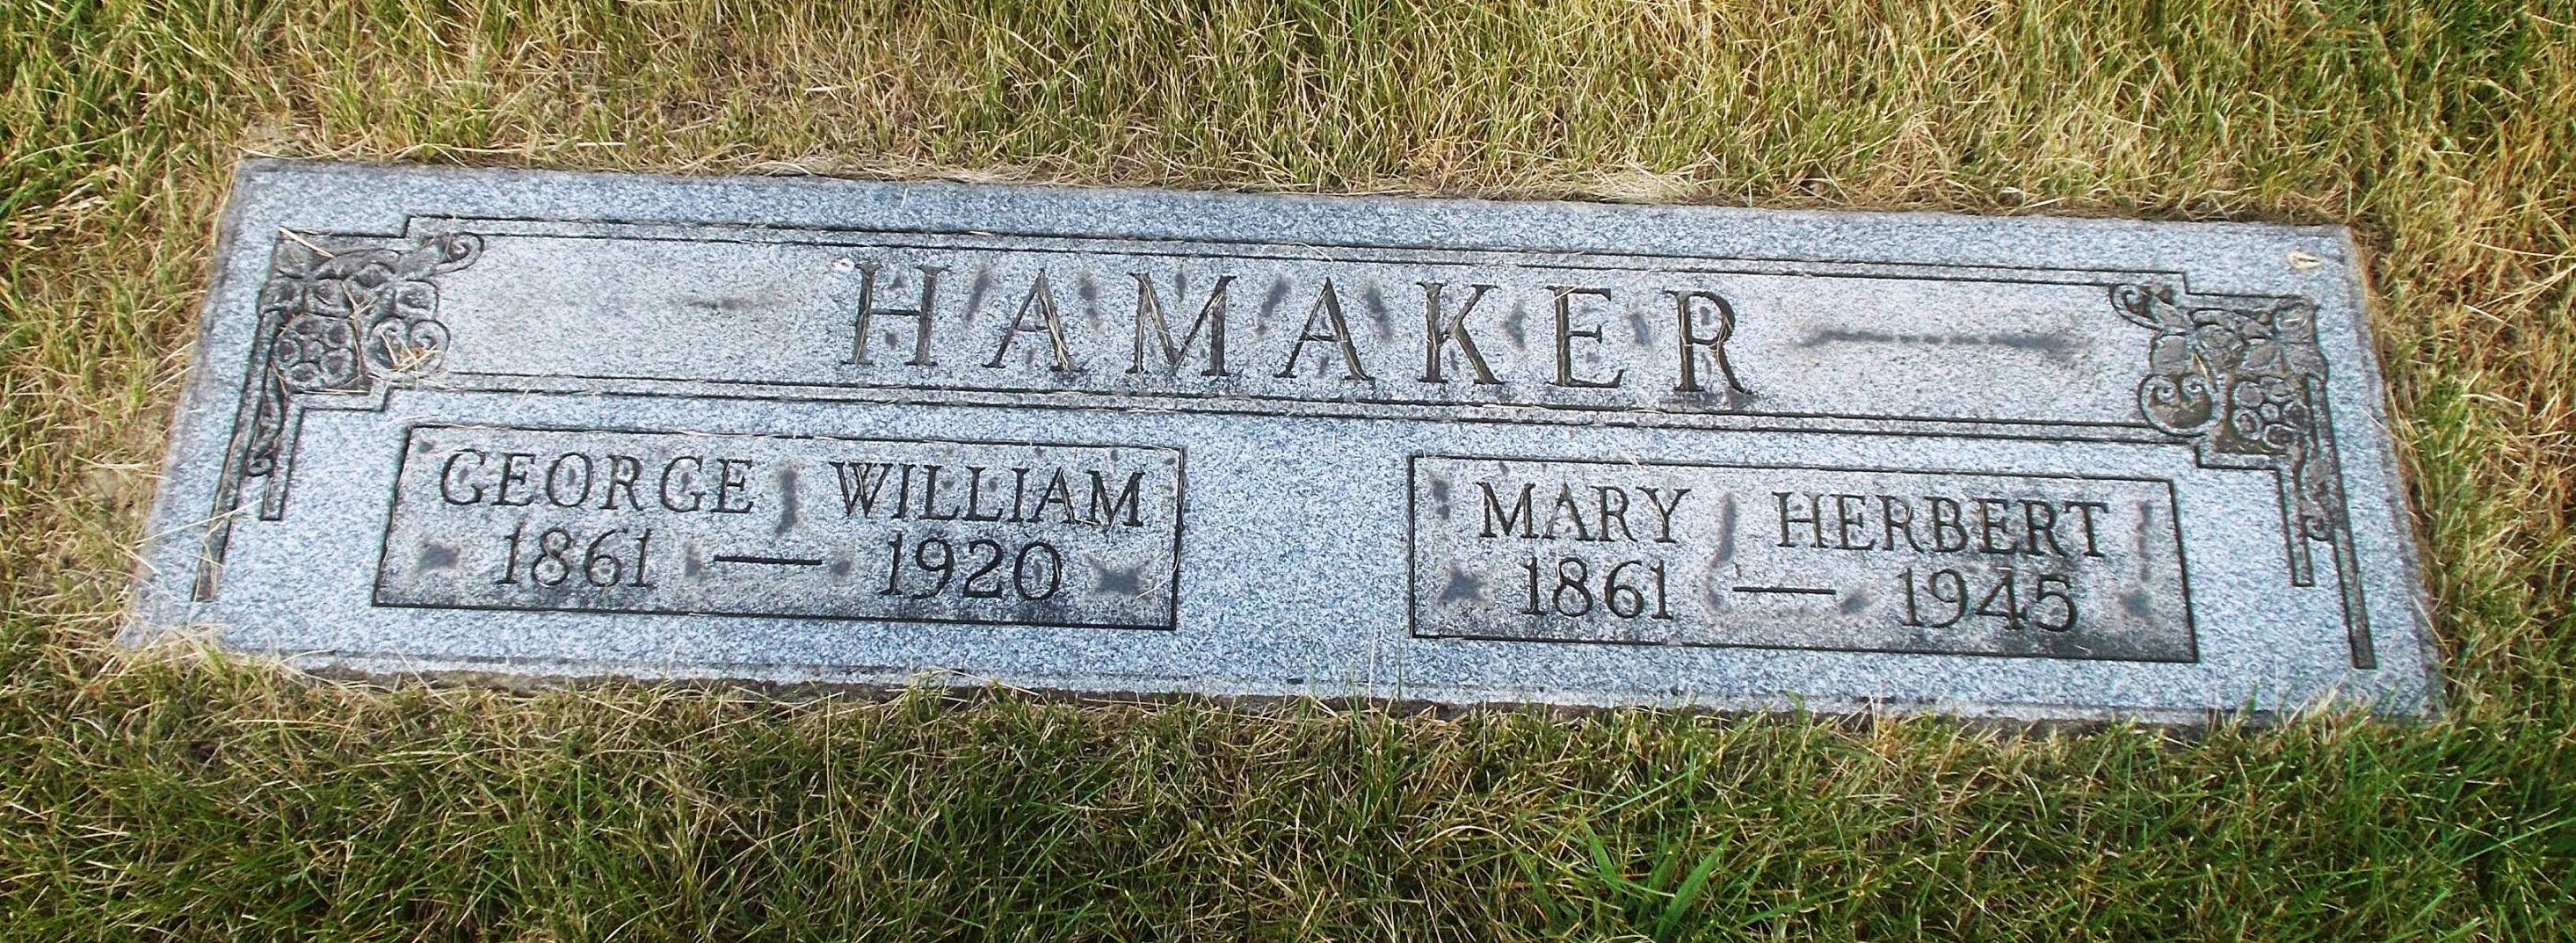 George William Hamaker